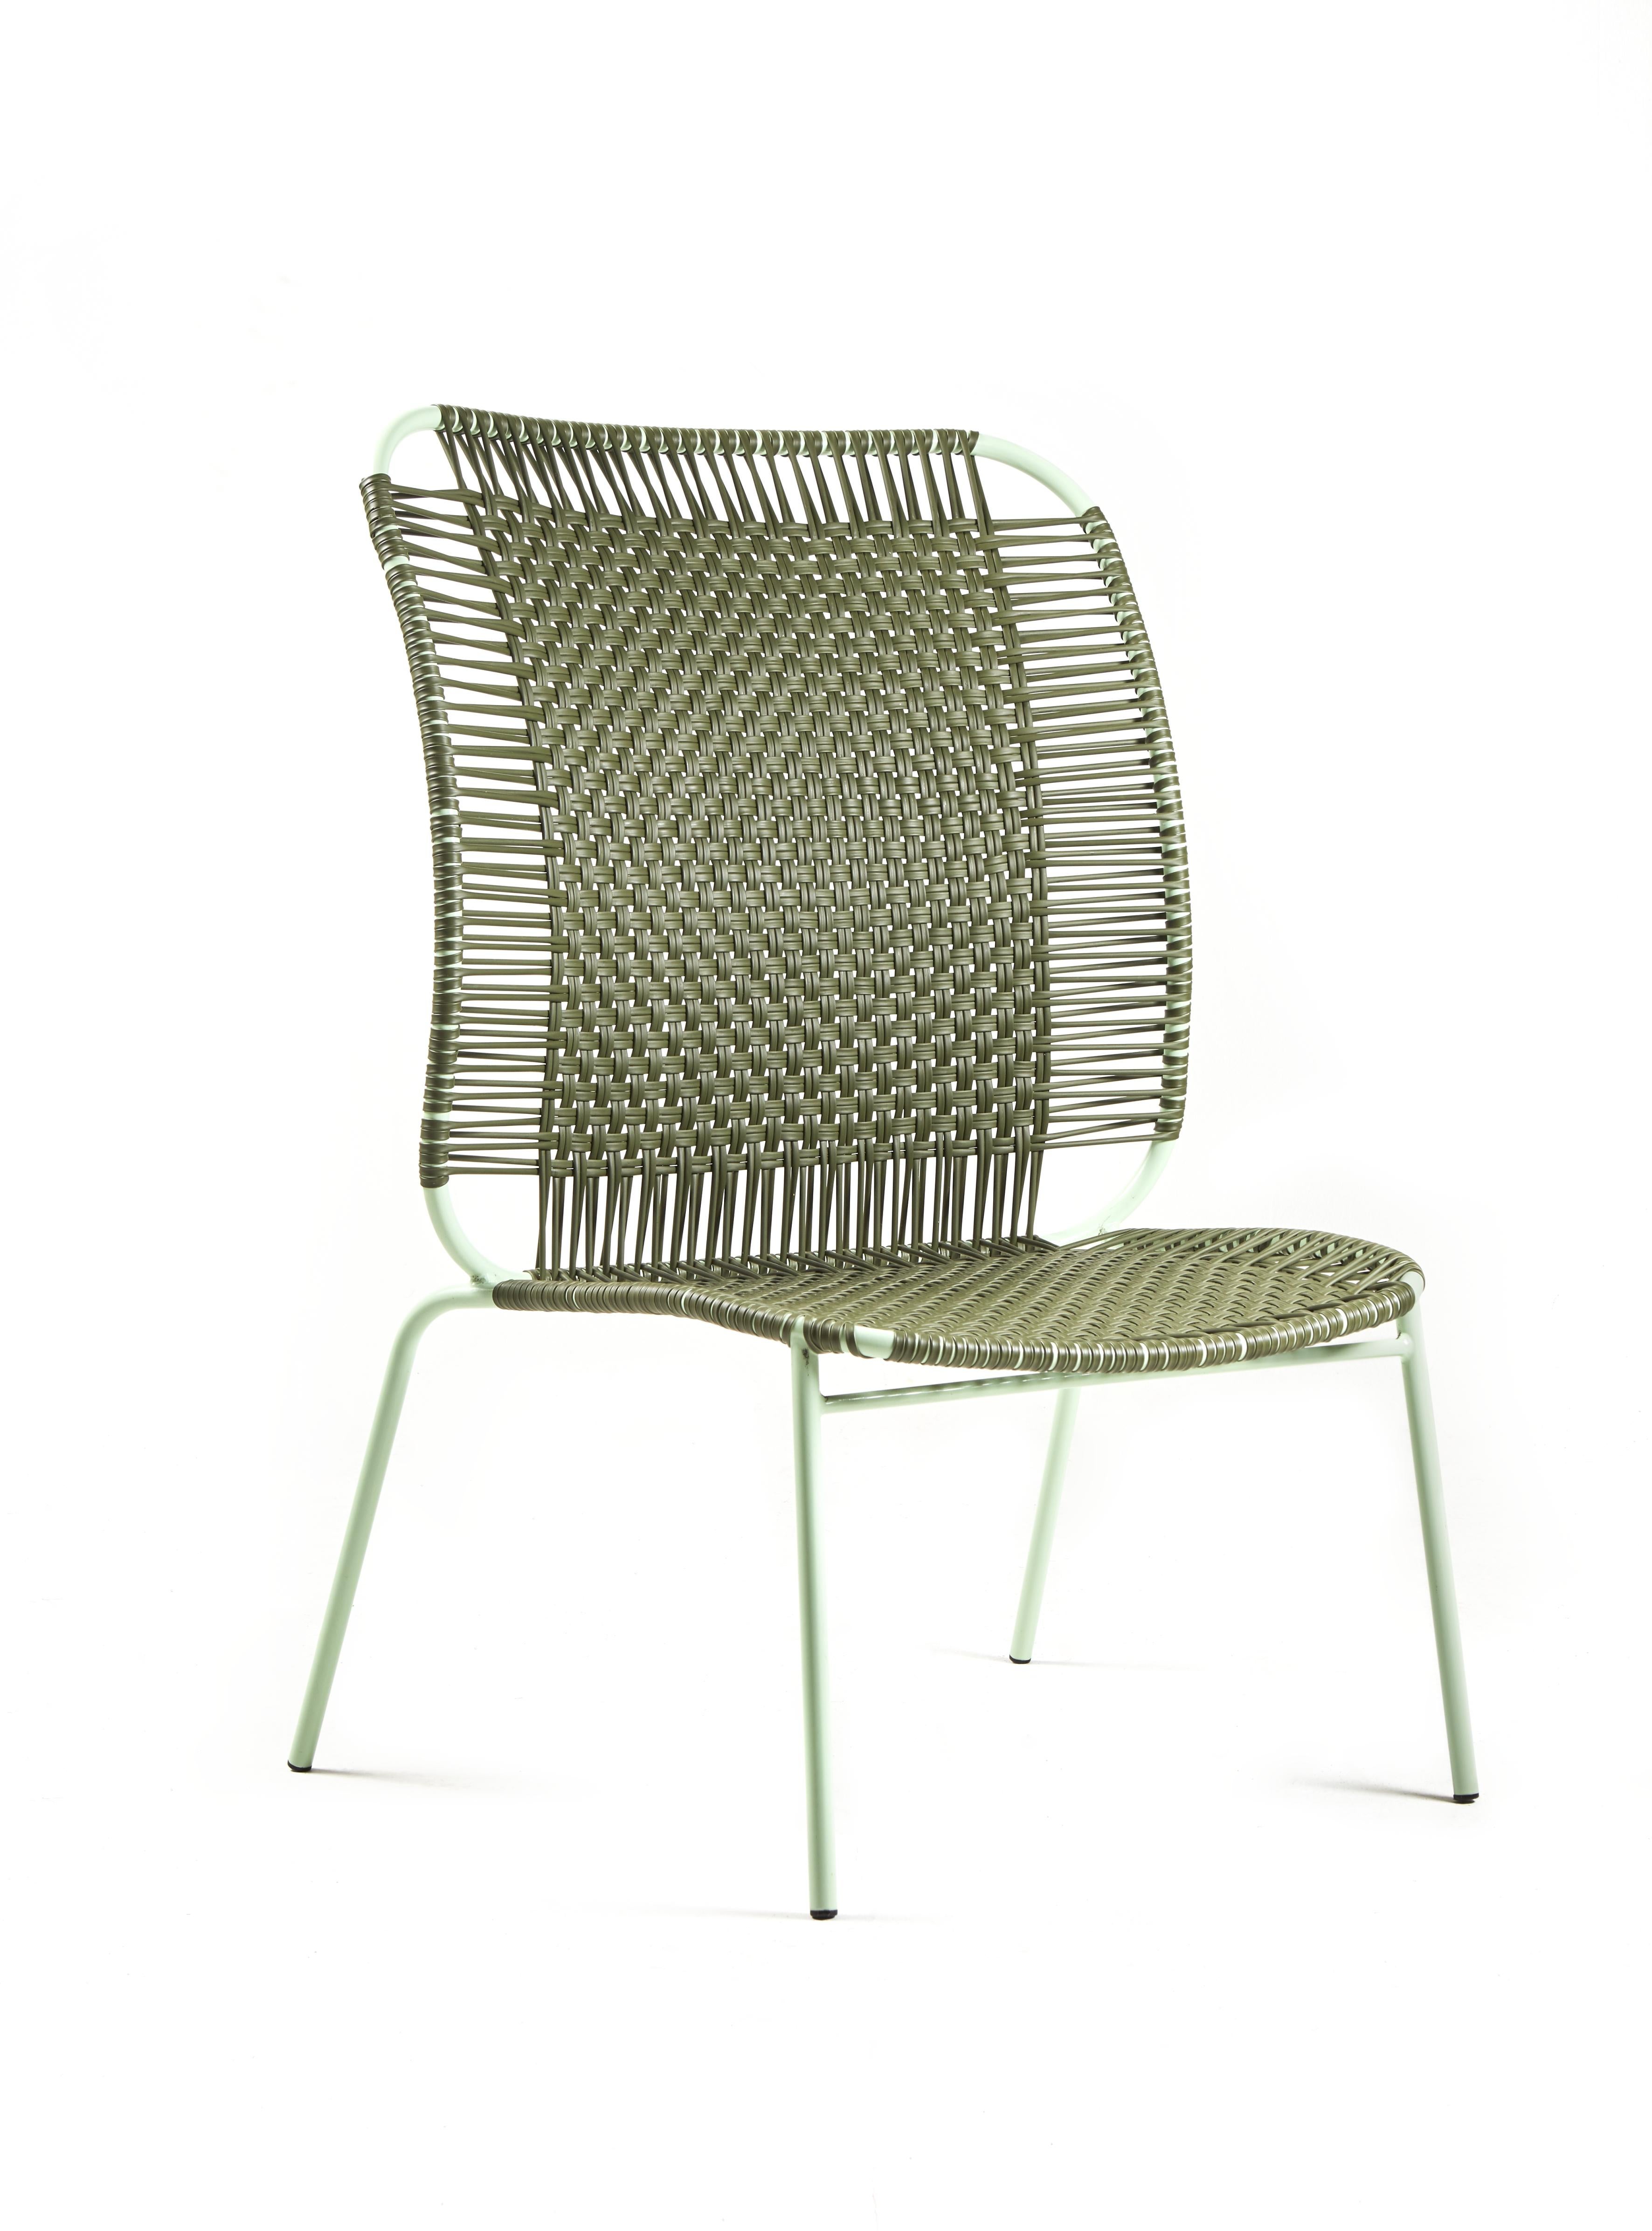 Lot de 2 chaises hautes de salon Cielo olive de Sebastian Herkner
Matériaux : Tubes d'acier galvanisés et revêtus de poudre. Les cordes en PVC sont fabriquées à partir de plastique recyclé.
Technique : Fabriqué à partir de plastique recyclé et